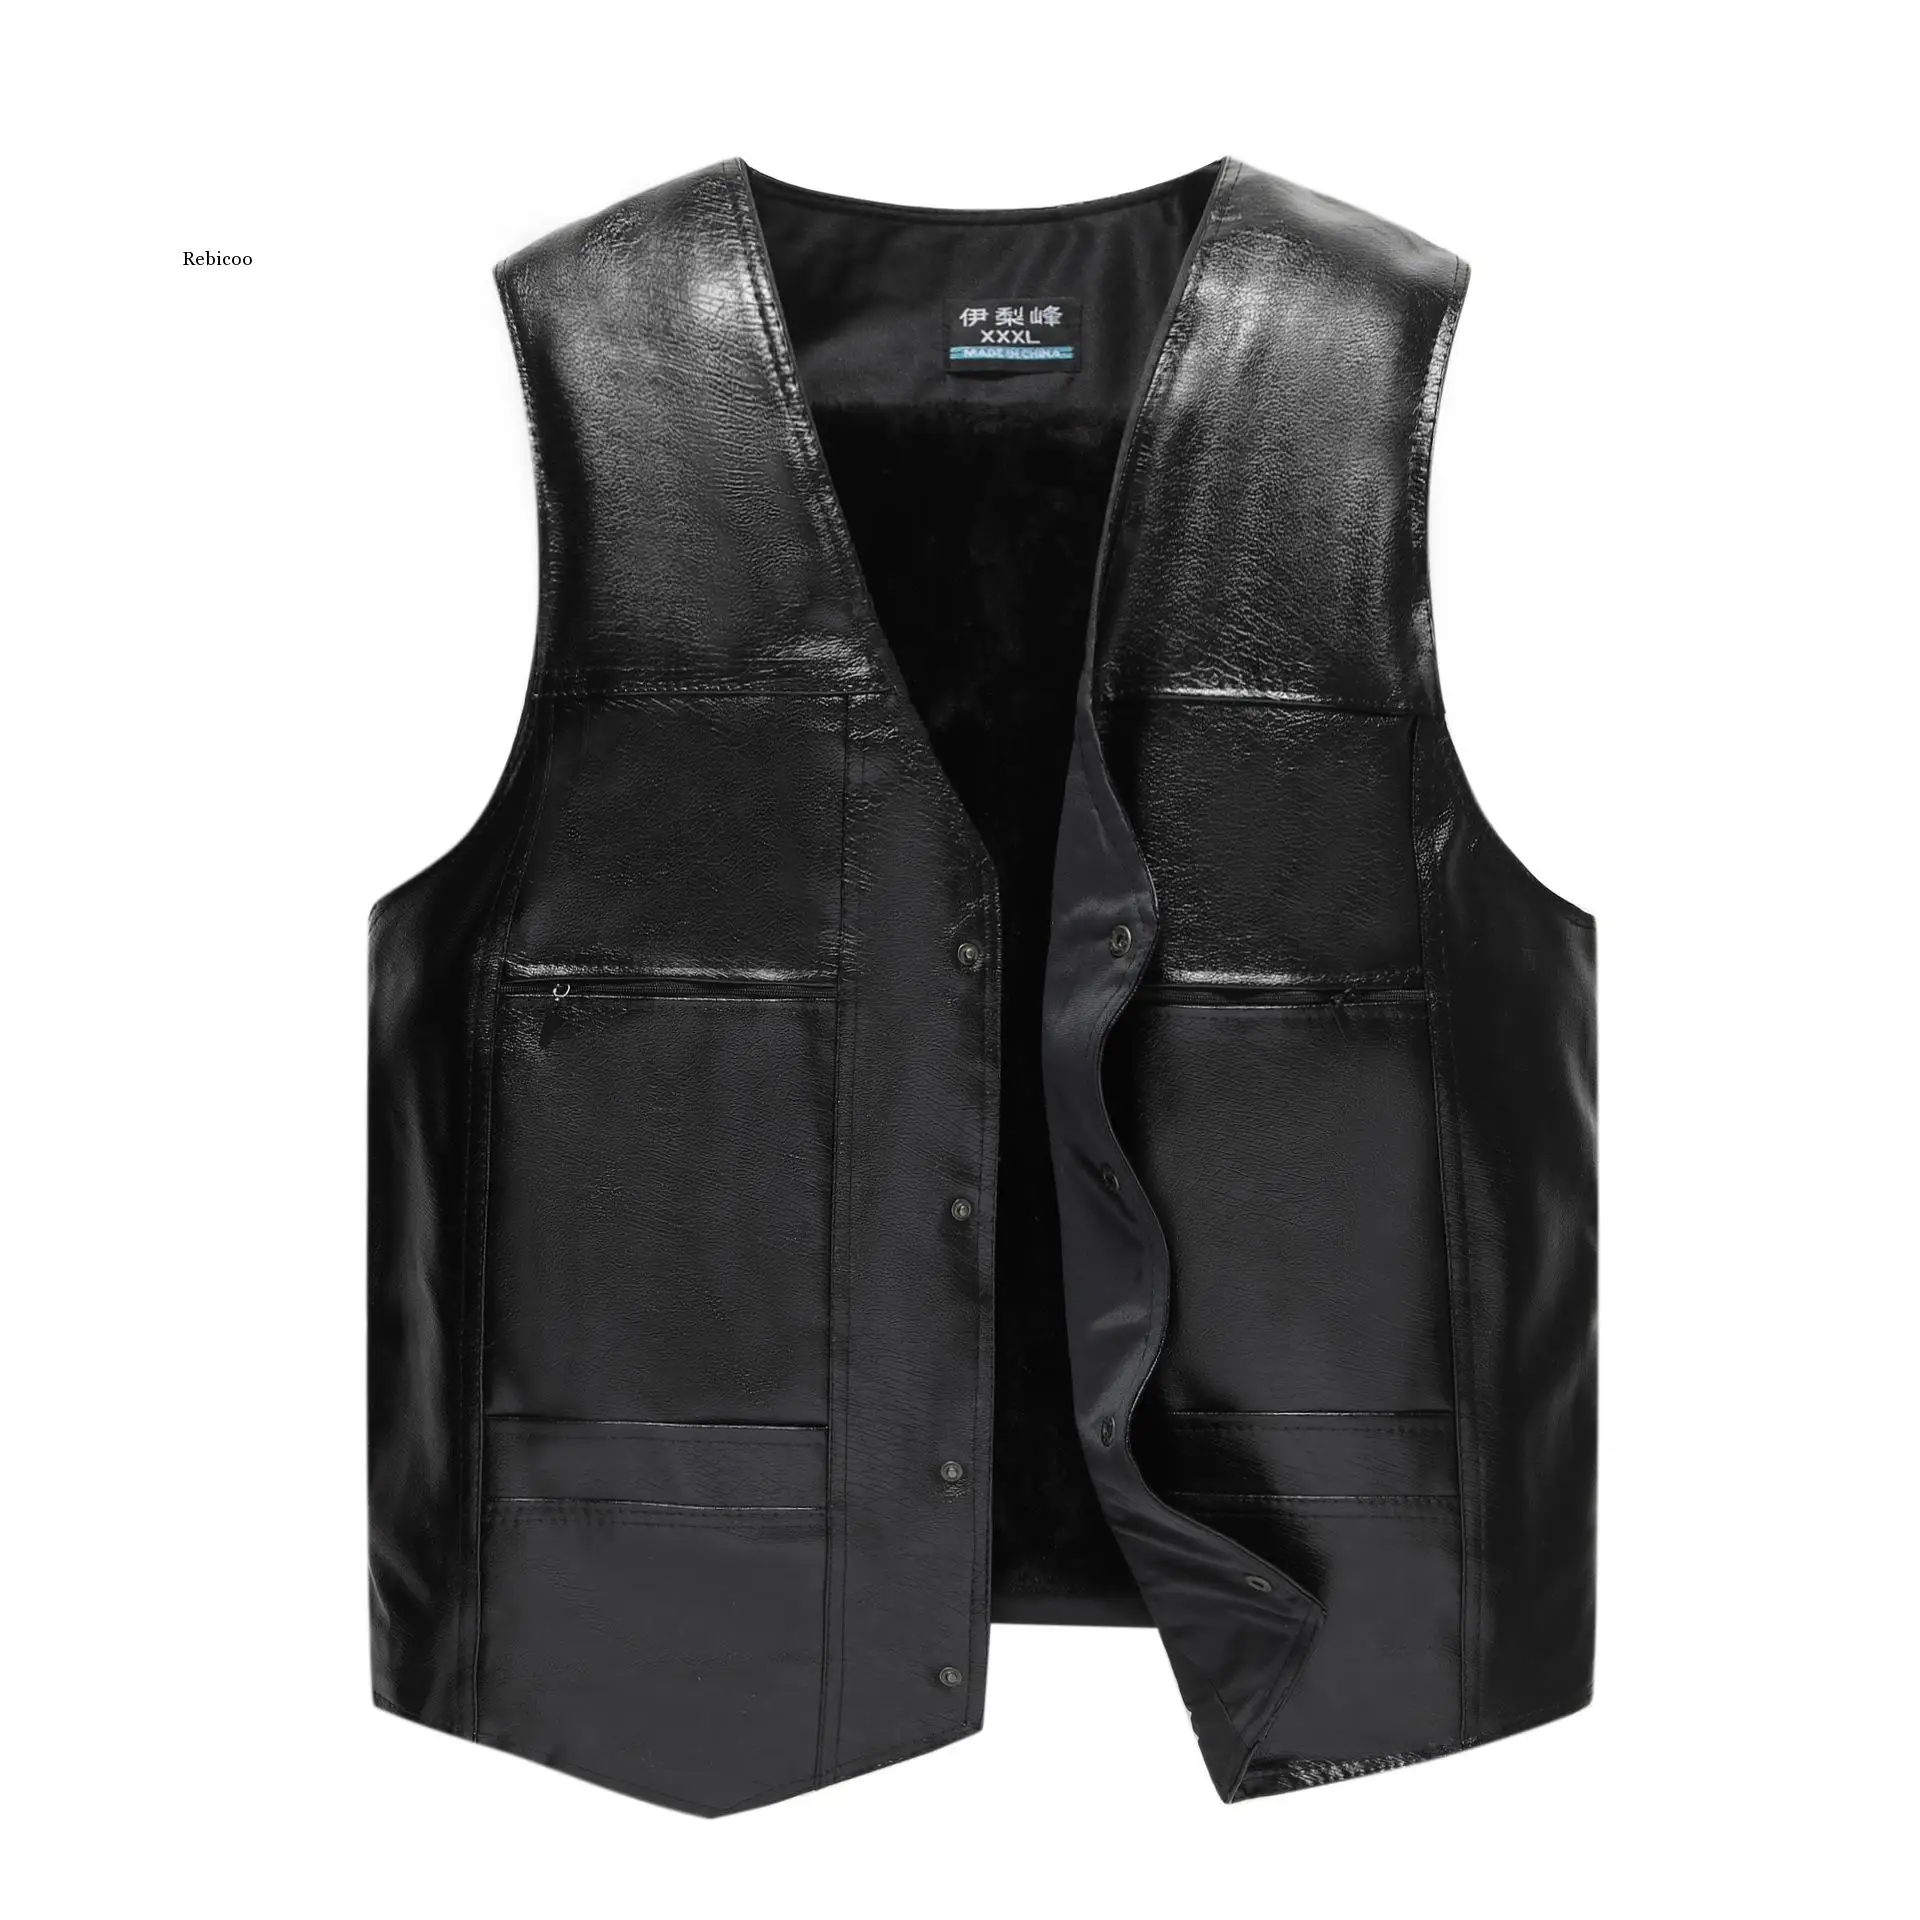 More-Men-s-Pu-Leather-Vest-Fashion-V-Neck-Warm-Vest.jpg